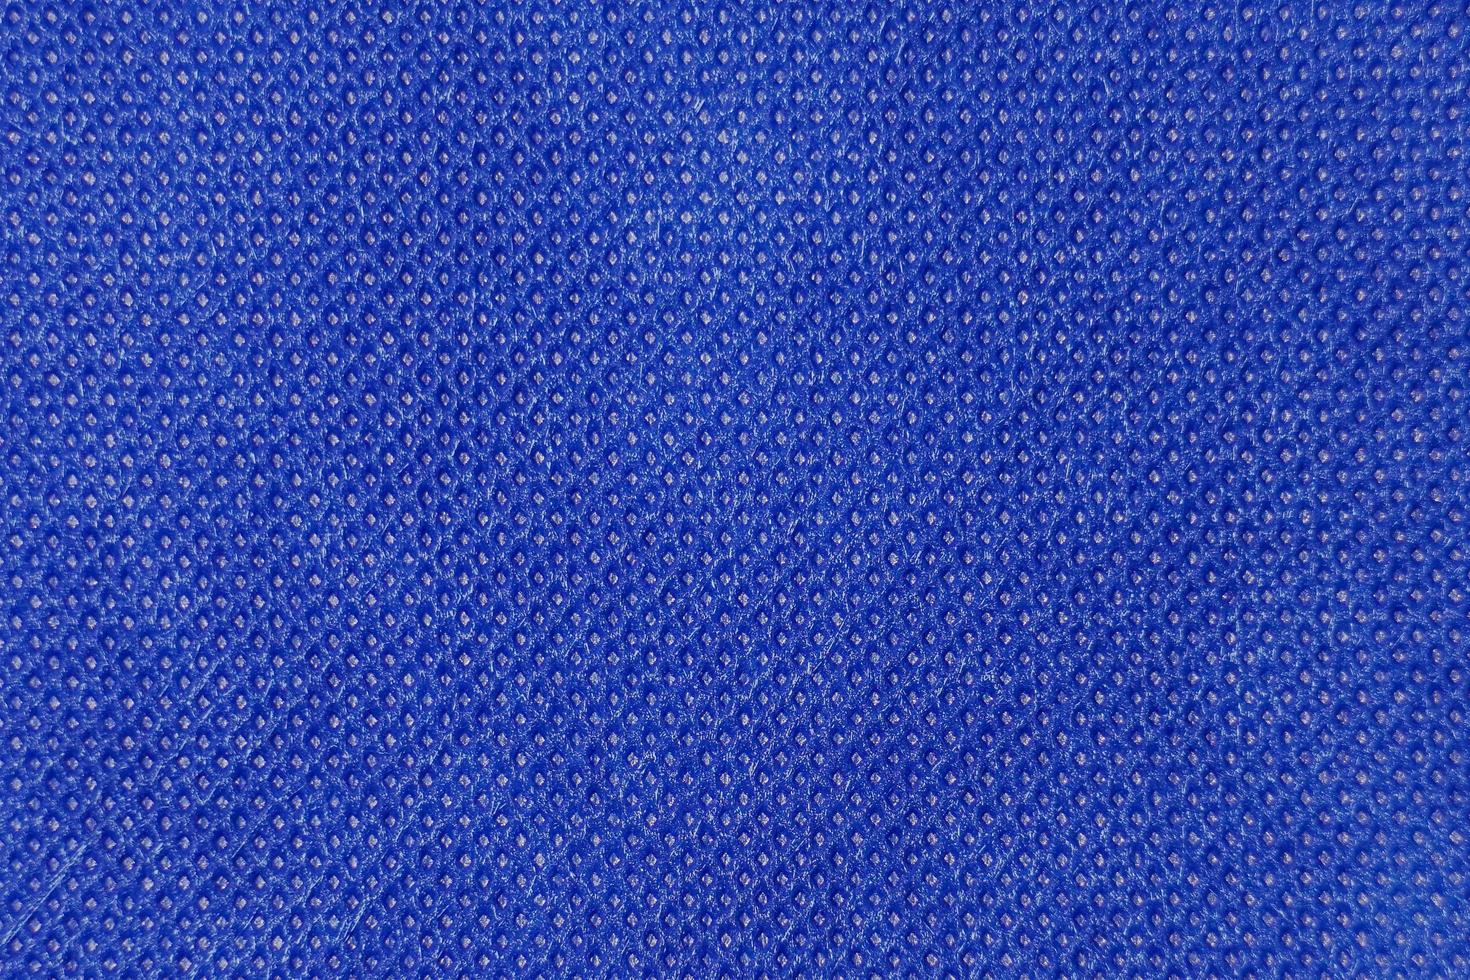 den abstrakta ytan på det vävda tyget i blått för ett bakgrundsmönster. en detaljerad elementgrafik för en kreativ design. foto